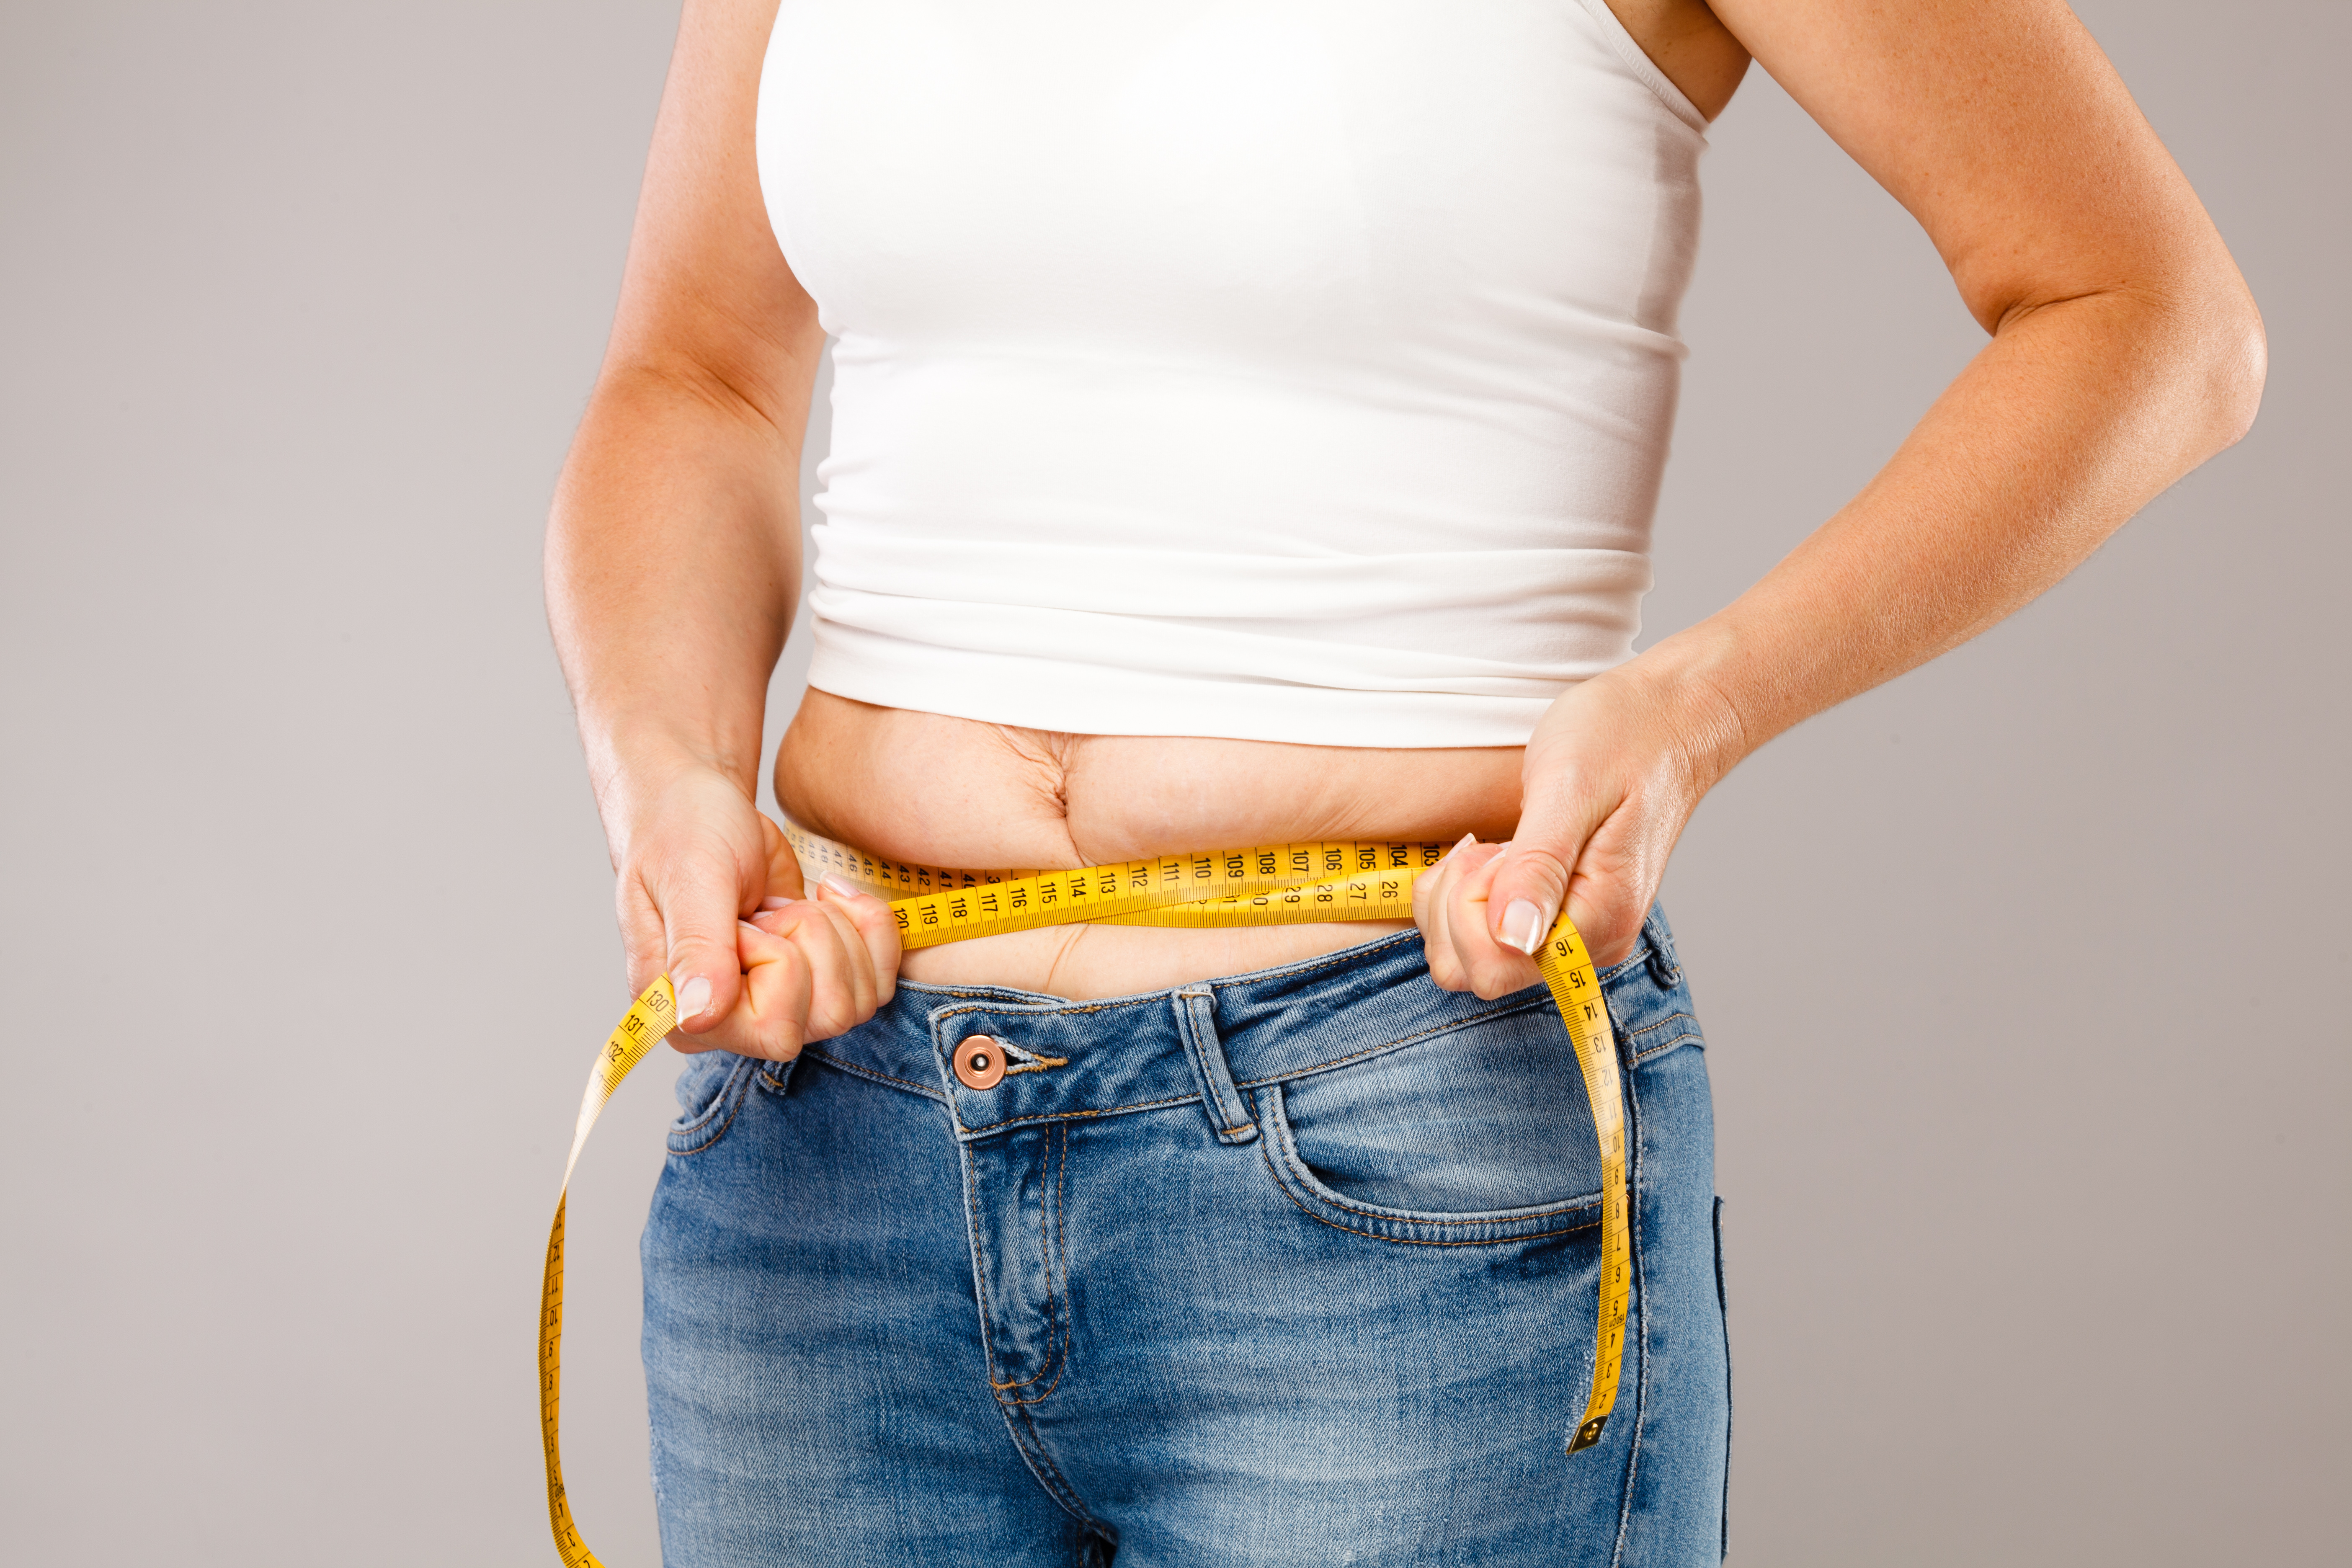 Сбросить лишний вес или избавиться от жира?